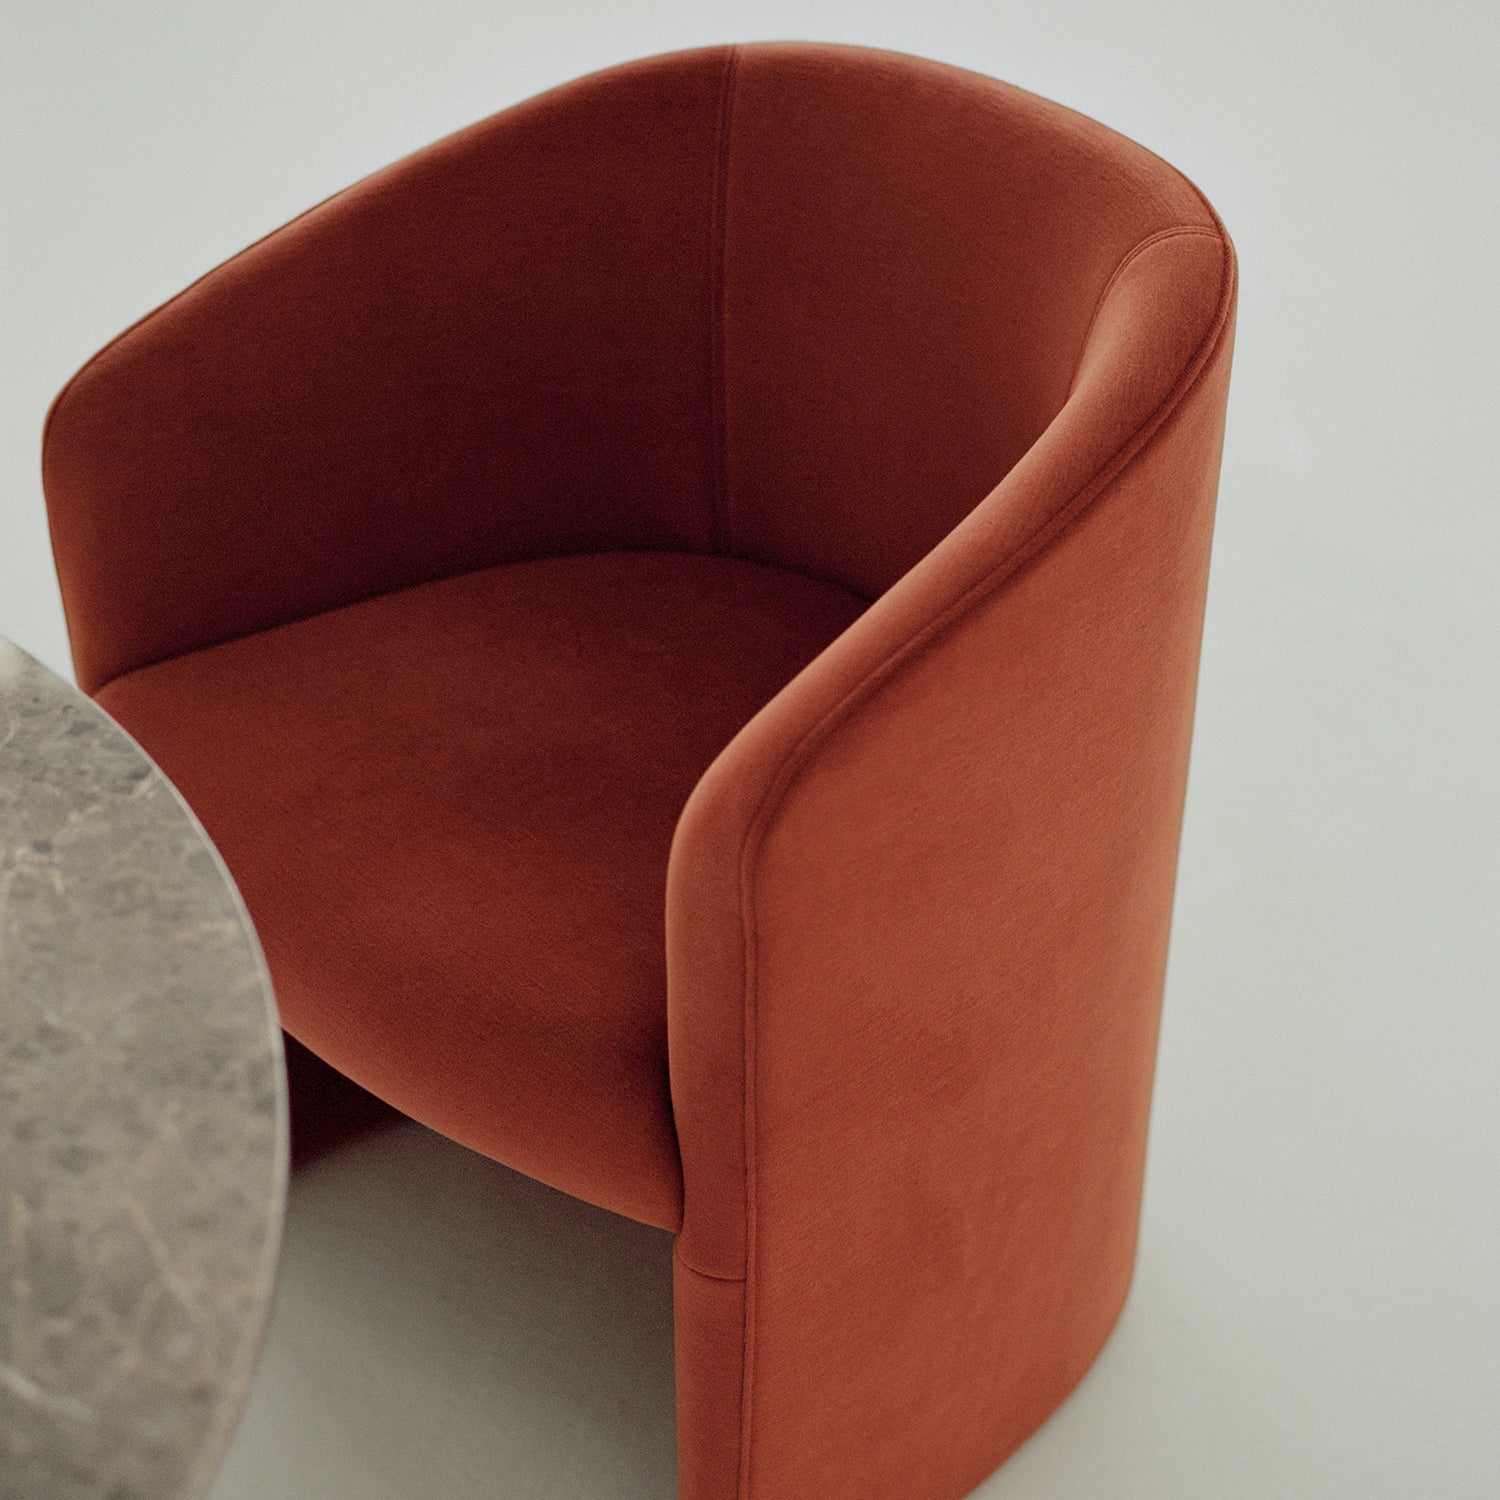 Covent Club Chair - The Design Choice